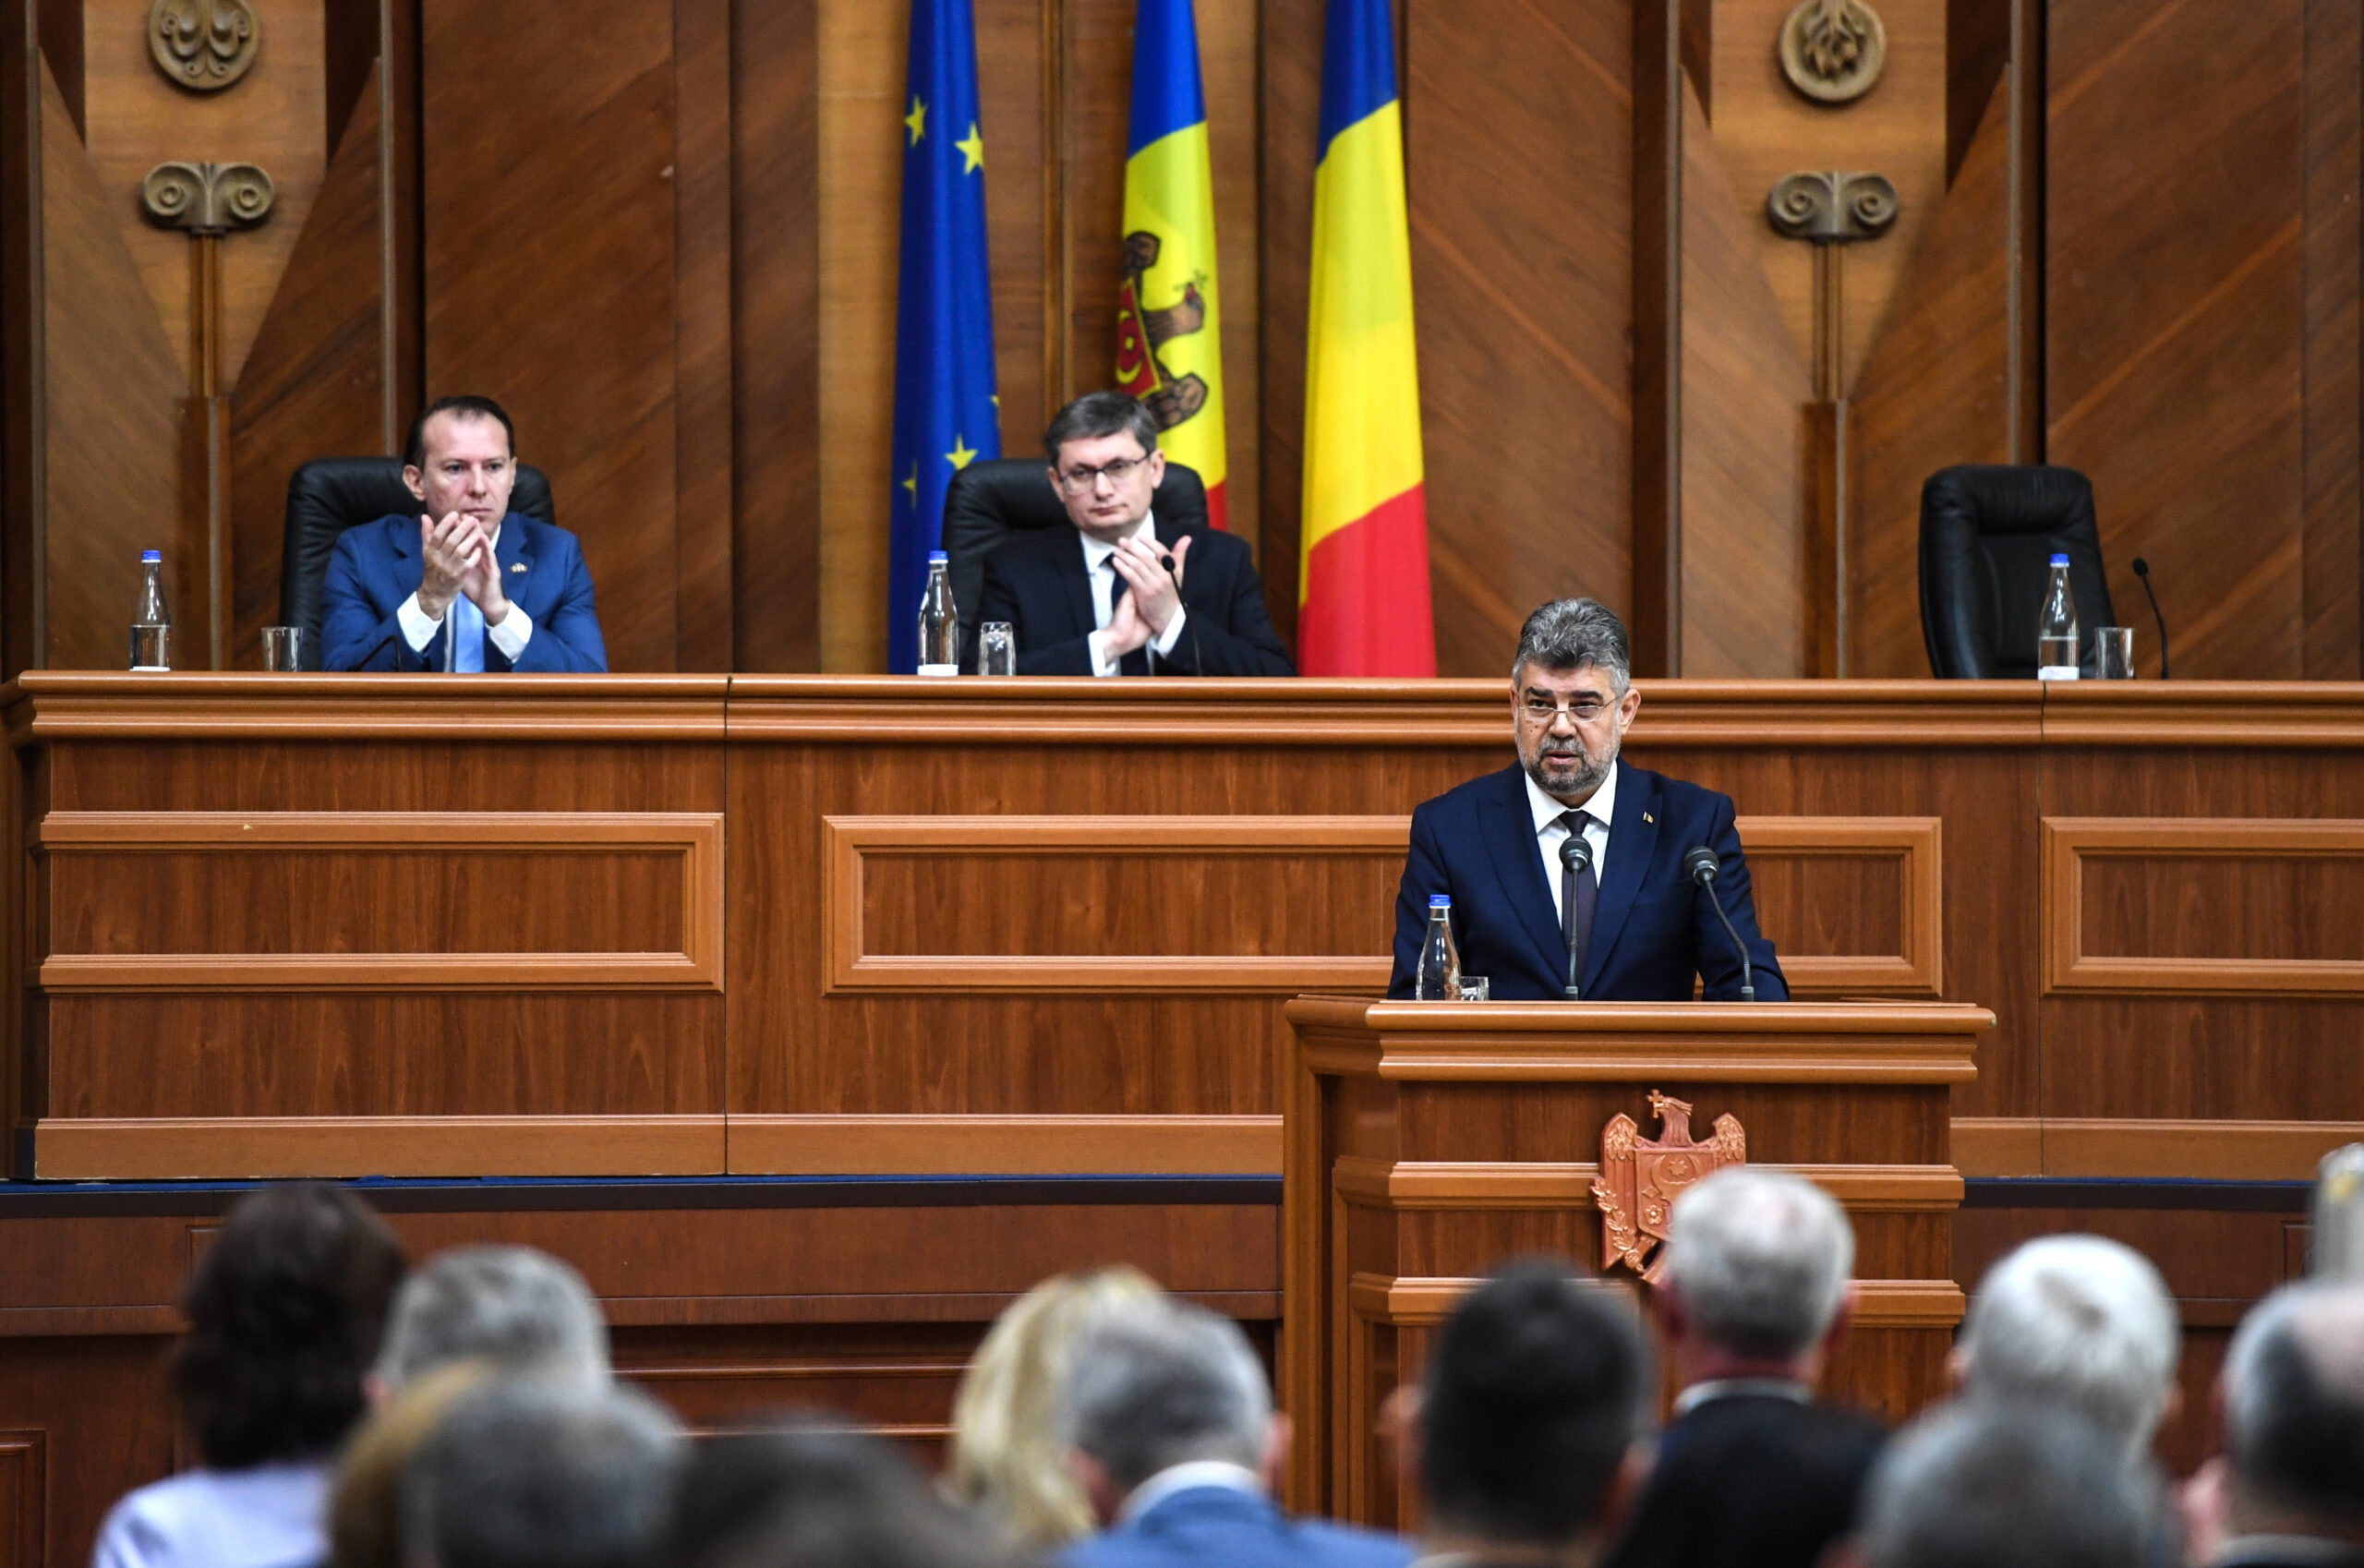 Overwhelming Anoi Pathetic Marcel Ciolacu reafirmă în Parlamentul de la Chişinău spijinul României  pentru aderarea Moldovei la UE şi îl atacă pe Putin: "Un stat nu este măreţ  prin faptul că îşi supune vecinii prin